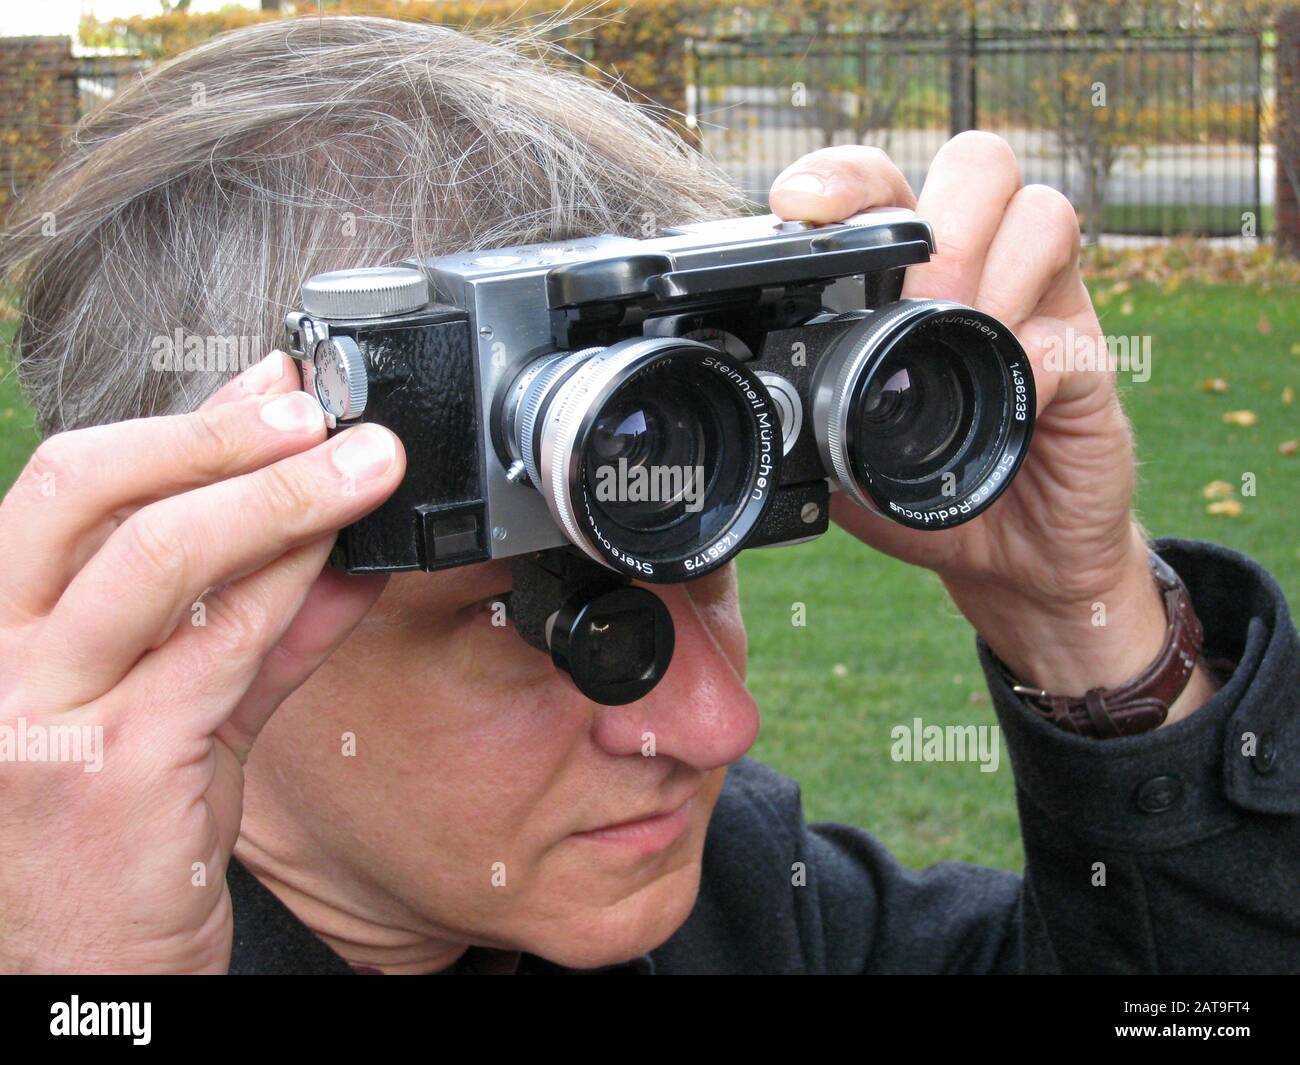 Fotografo che utilizza una fotocamera stereo 3D con obiettivi grandangolari collegati. Foto Stock